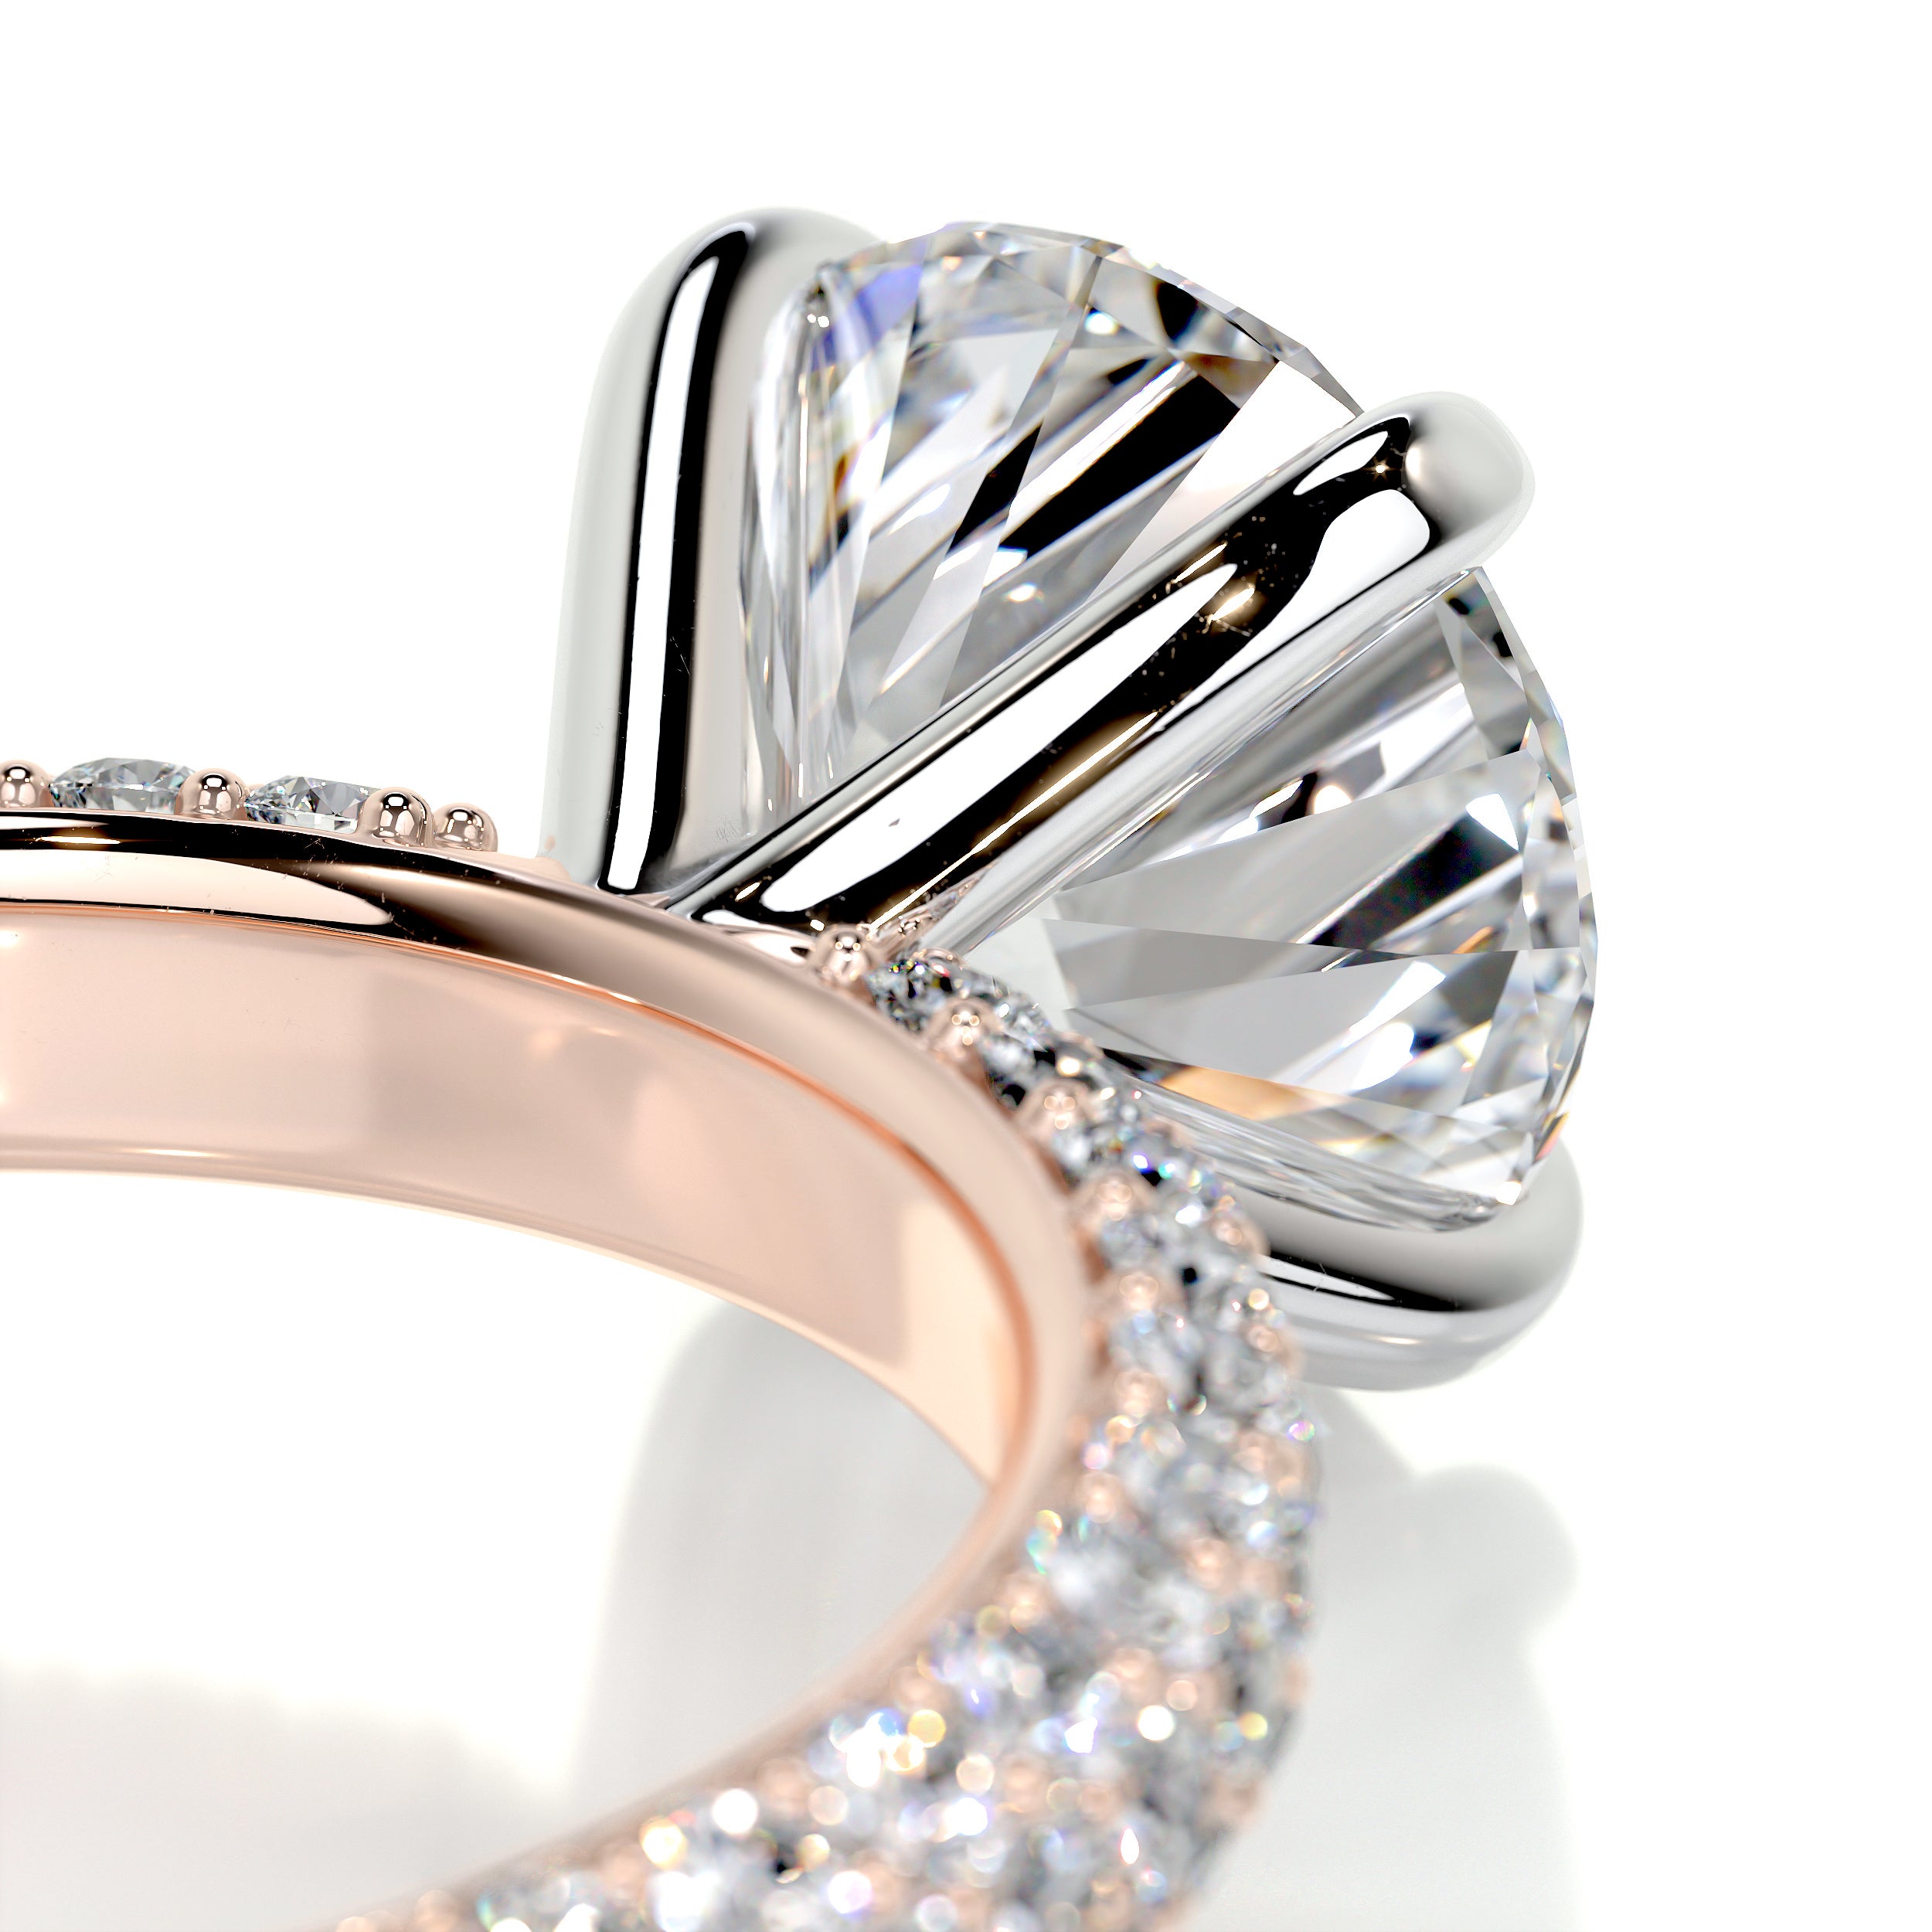 Charlotte Diamond Engagement Ring -14K Rose Gold